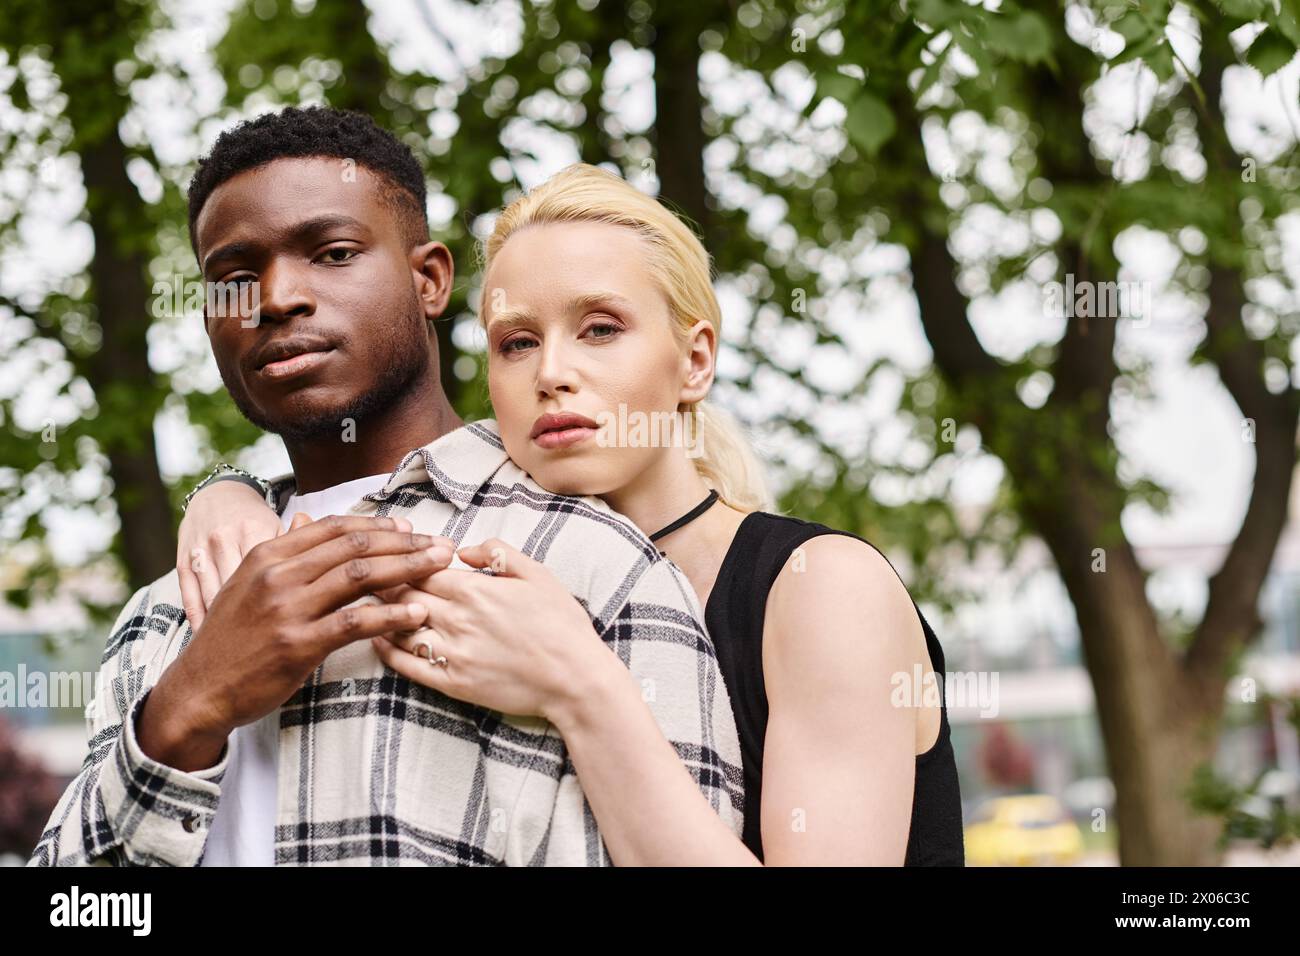 Ein glückliches multikulturelles Paar, ein Afroamerikaner und eine Kaukasierin, die einen zärtlichen Moment draußen in einem Park teilen. Stockfoto